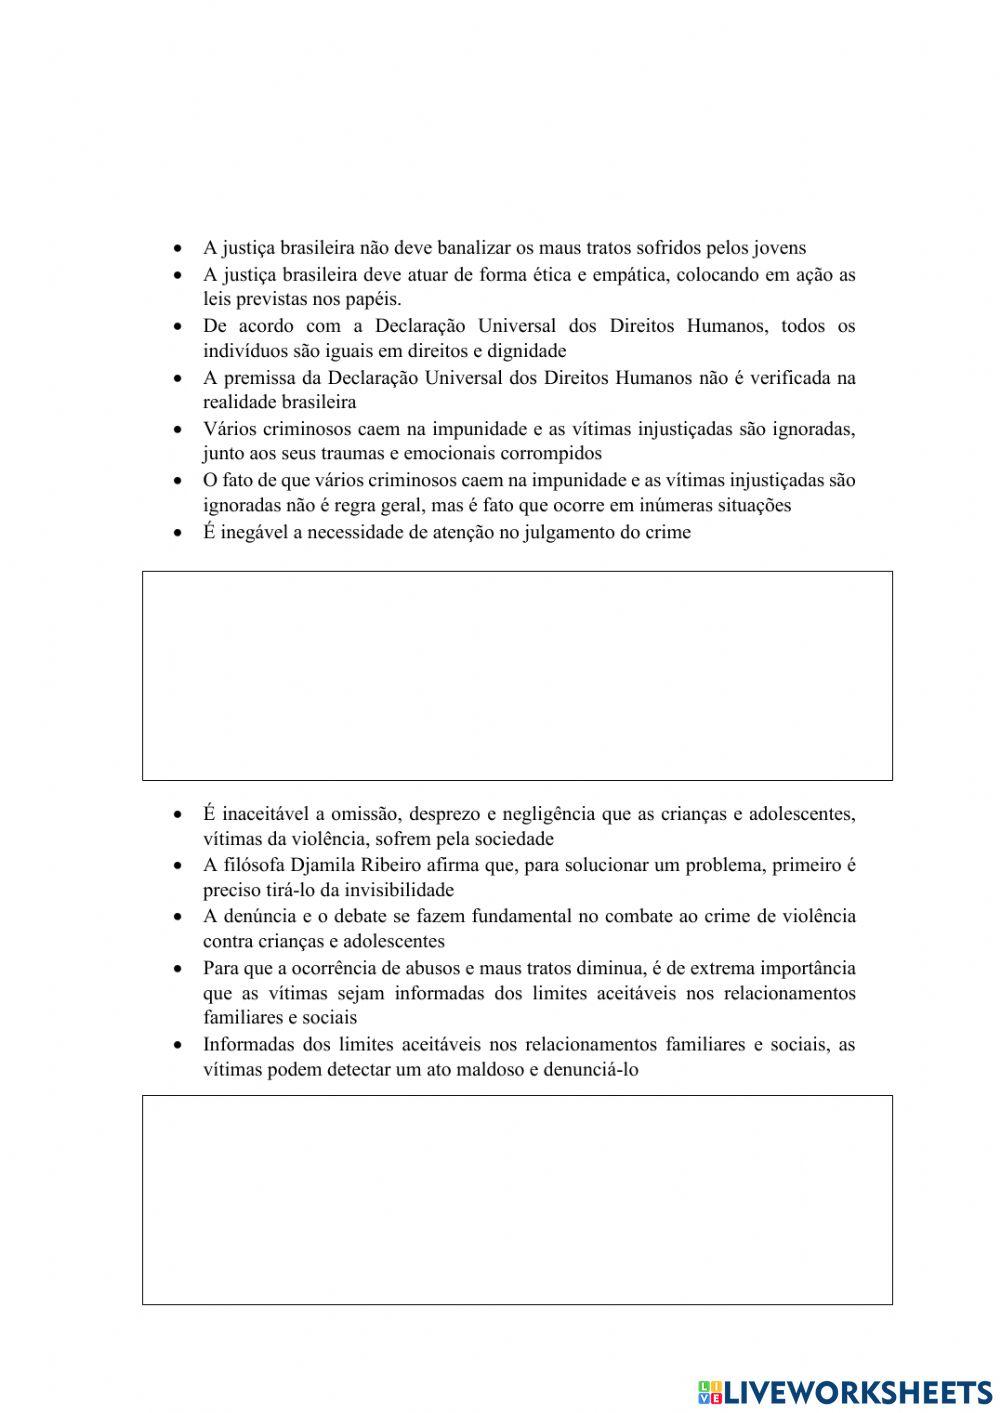 Prática de escrita do parágrafo de desenvolvido 1 sobre o tema “o crescimento da violência contra crianças e adolescentes no brasil”